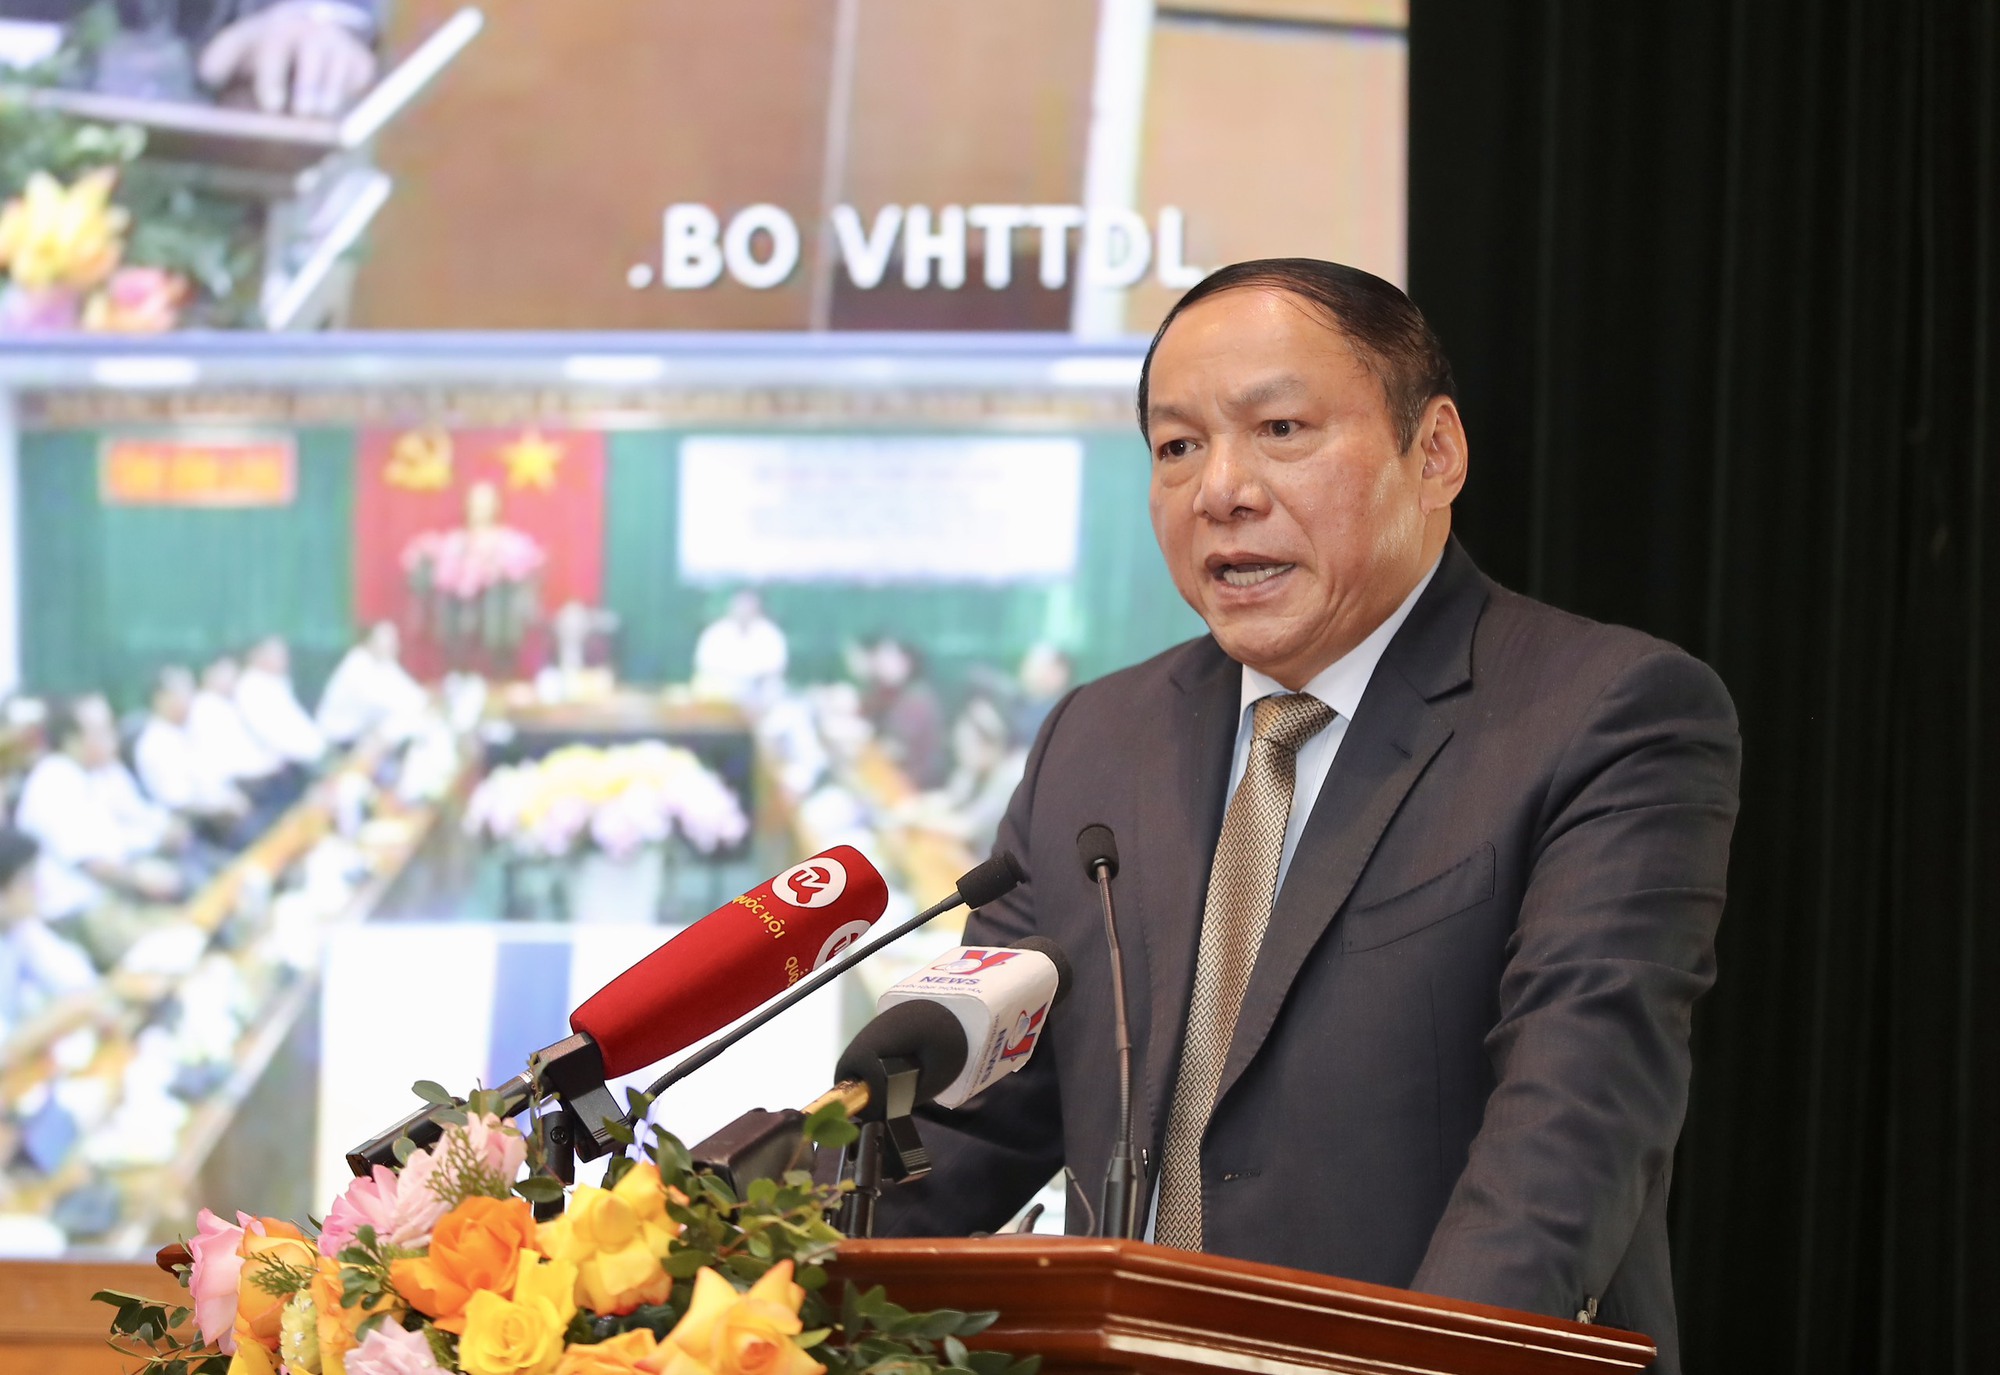 Bộ trưởng Nguyễn Văn Hùng: Cán bộ ngành Văn hóa cần nhẫn nại, &quot;Quả chín trên cây là quả chín dần dà&quot; - Ảnh 2.